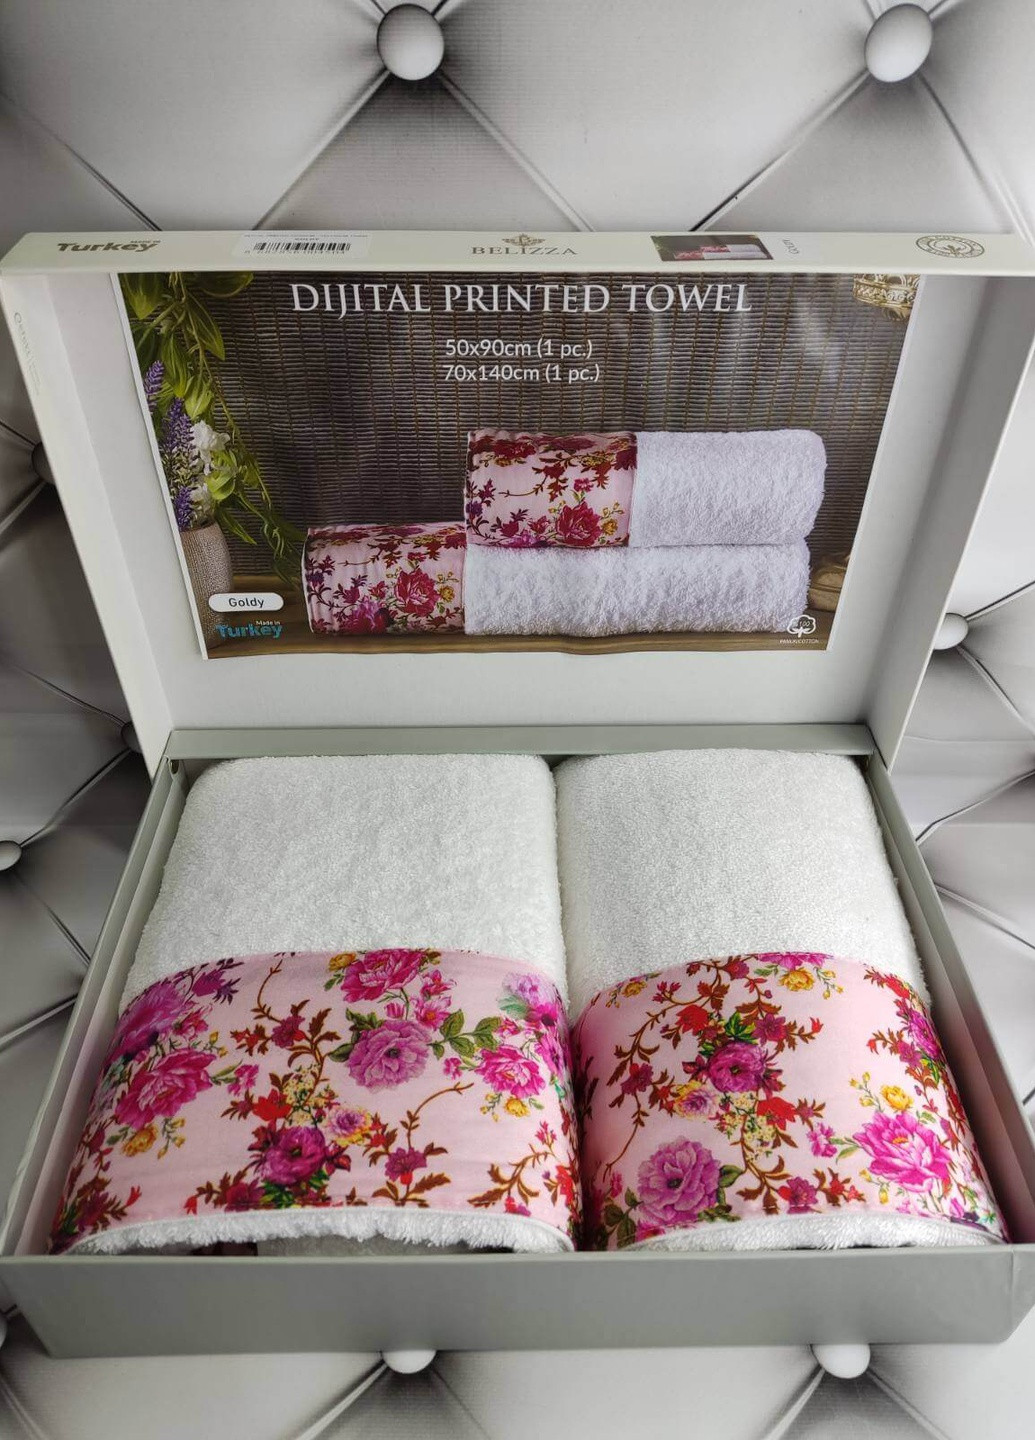 Belizza подарочный набор полотенец для ванной goldy 50х90см + 70х140см орнамент розовый производство - Турция